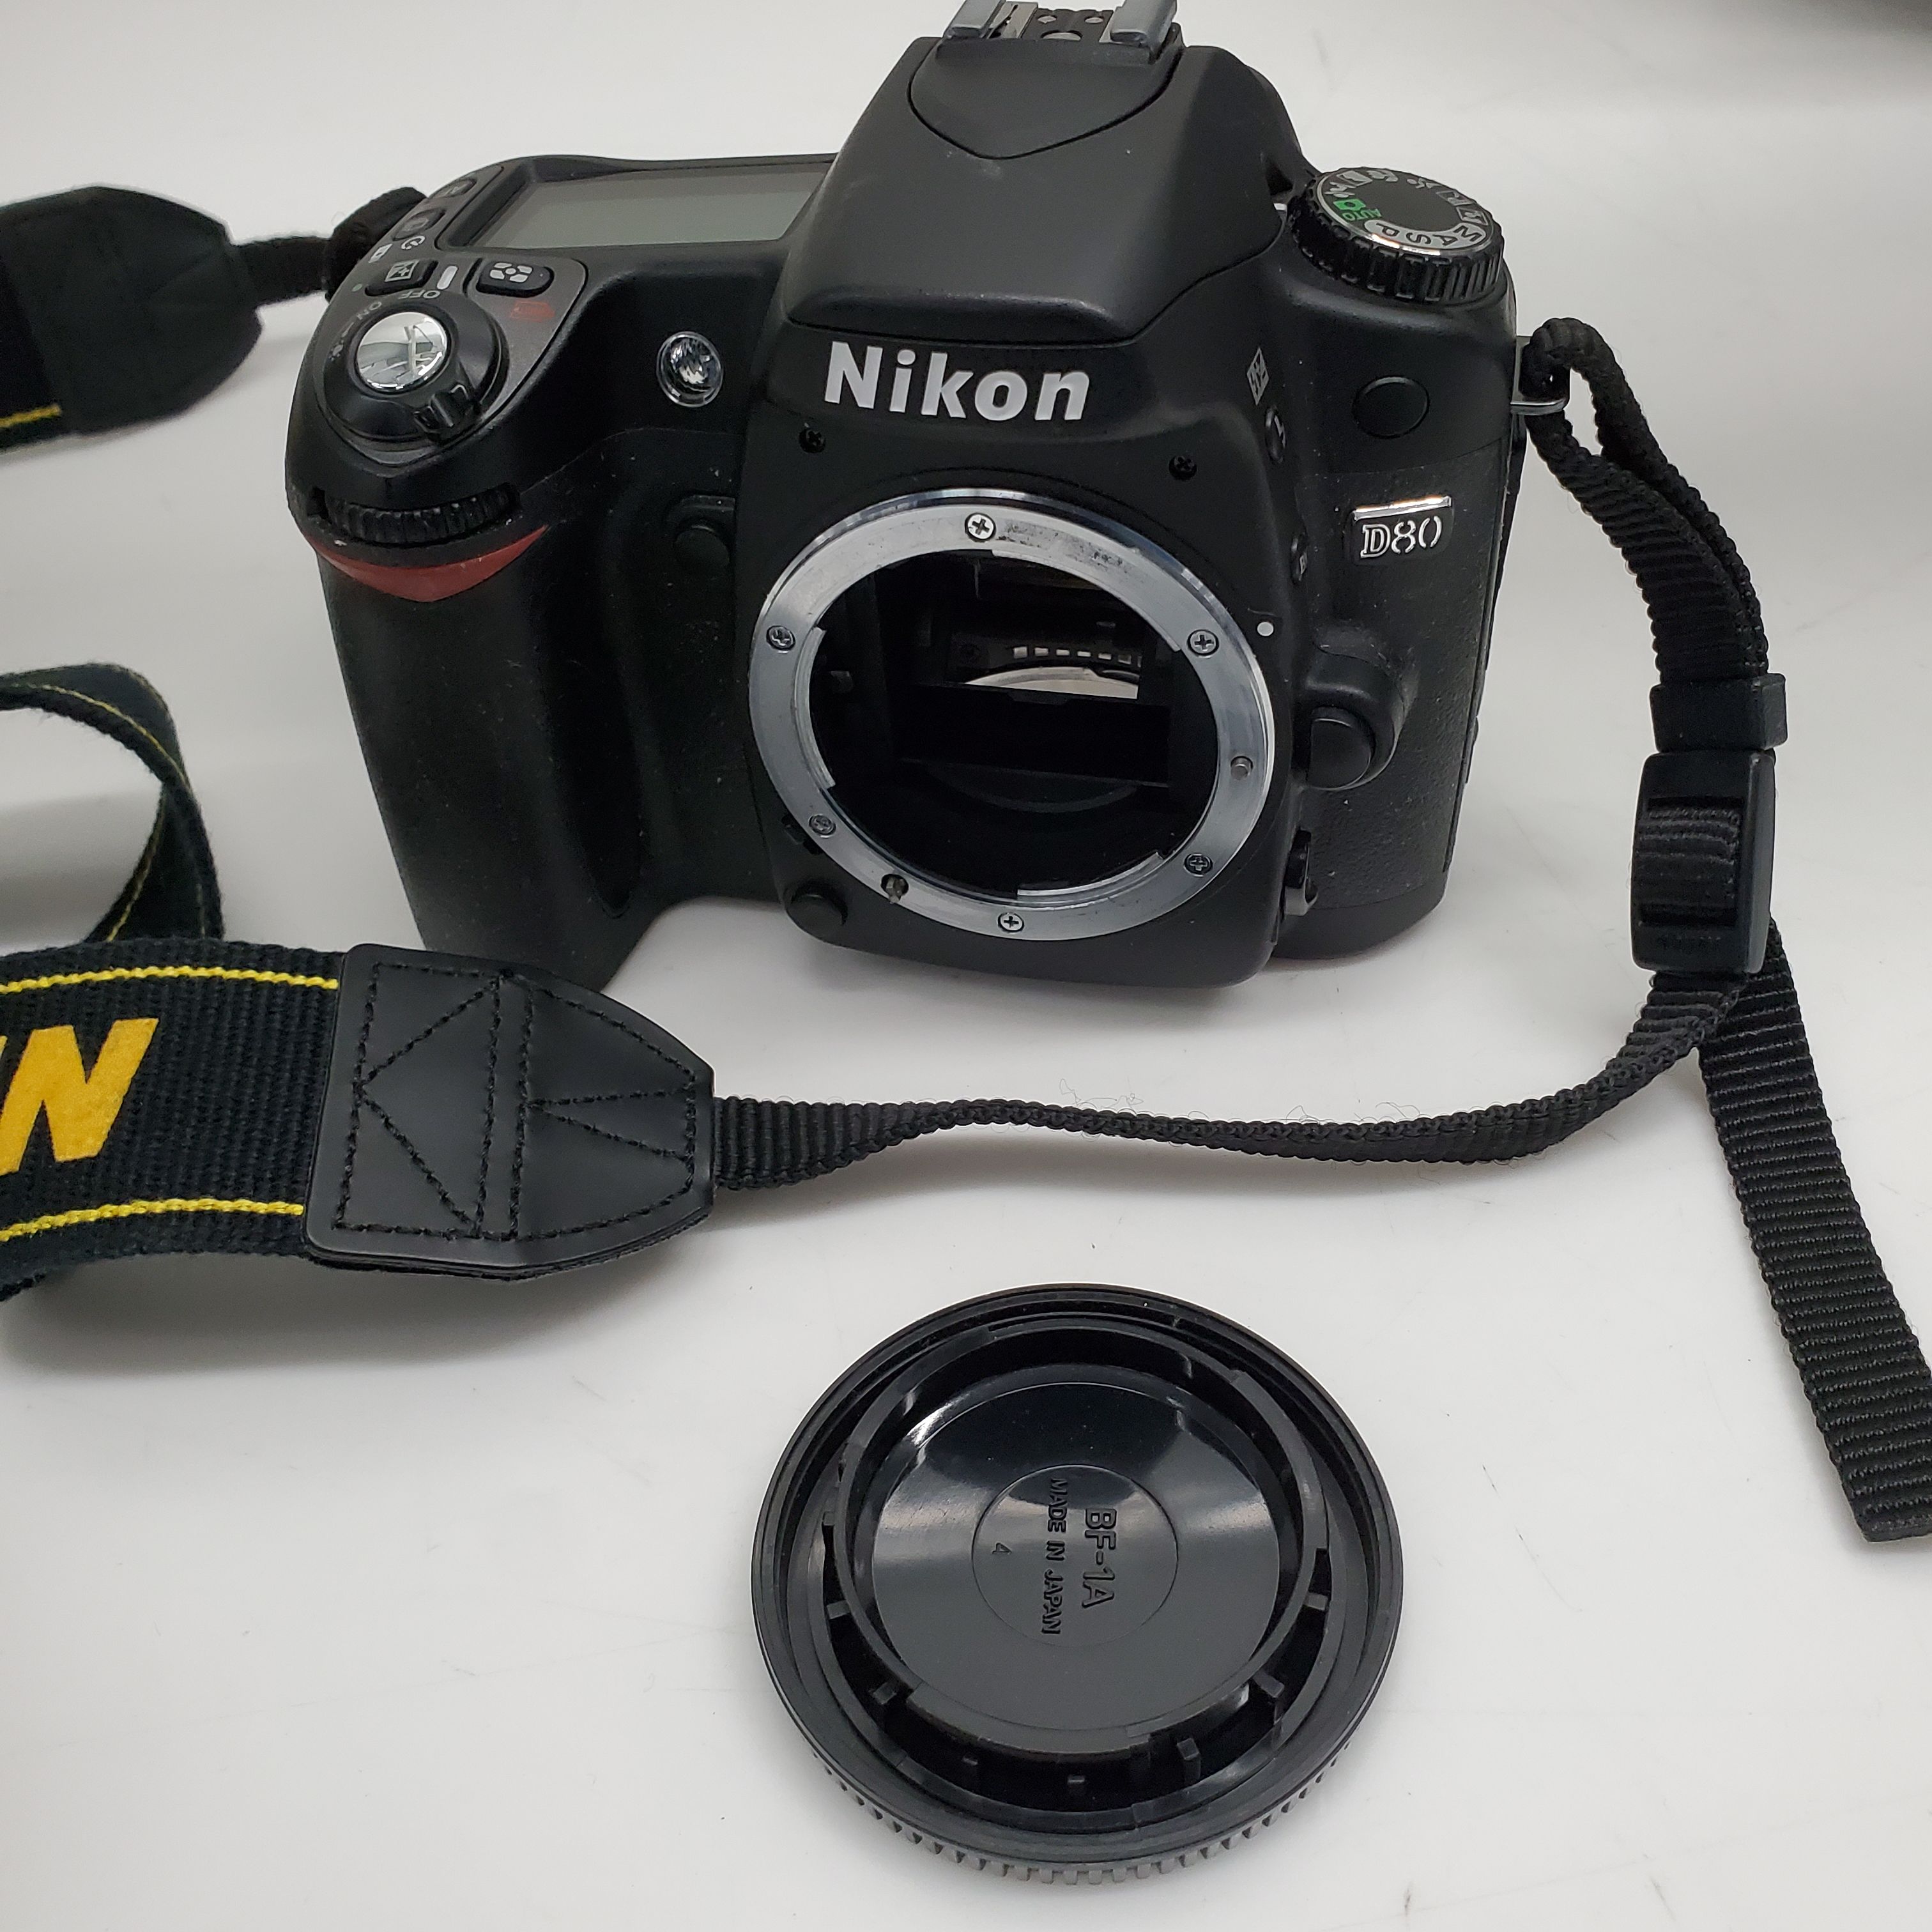 Buy the Nikon D80 Camera | GoodwillFinds